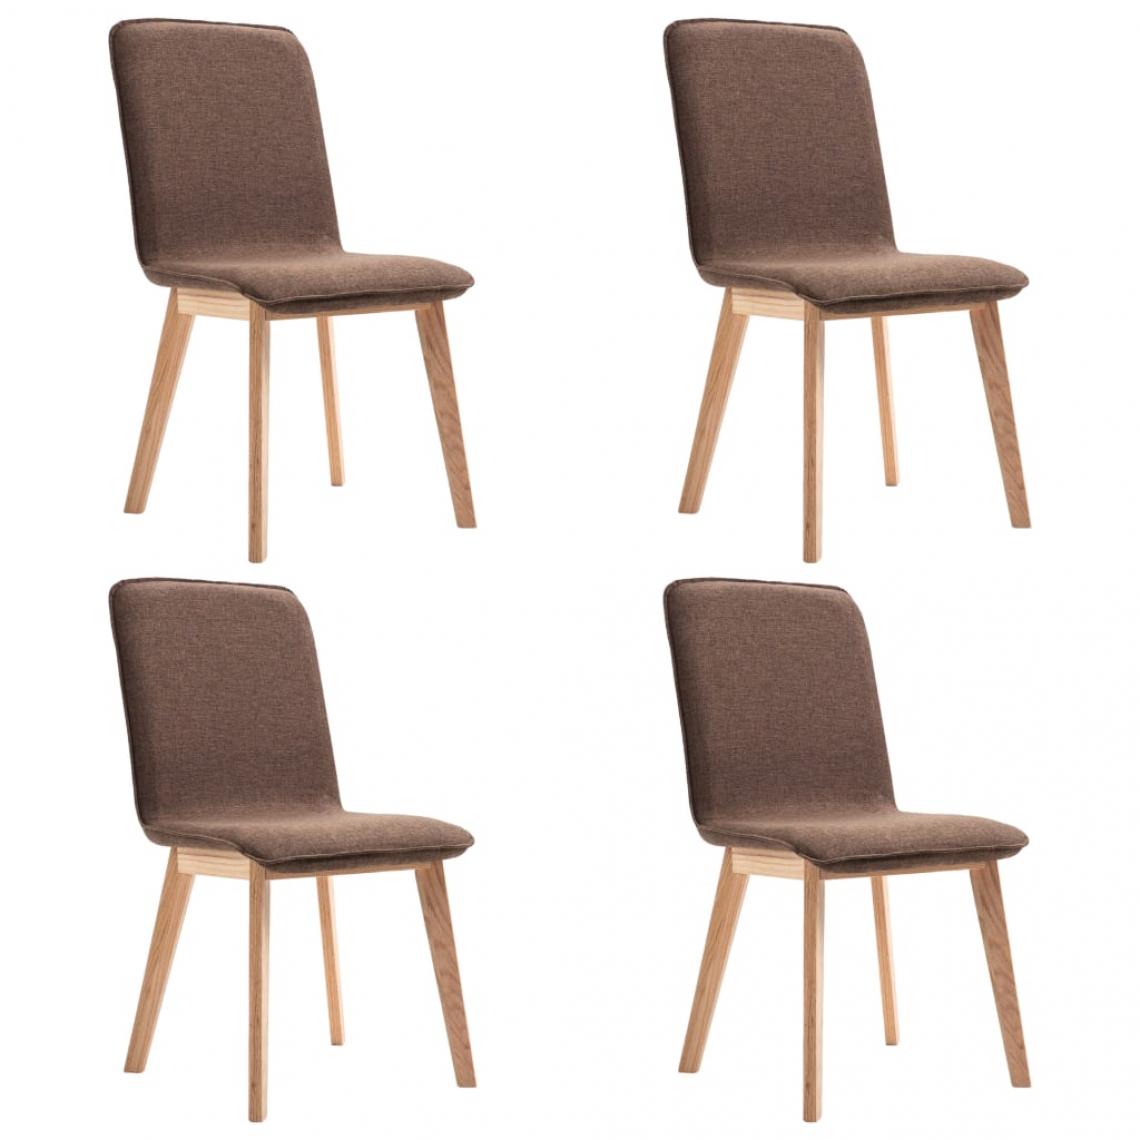 Decoshop26 - Lot de 4 chaises de salle à manger cuisine design moderne tissu marron et chêne massif CDS021763 - Chaises